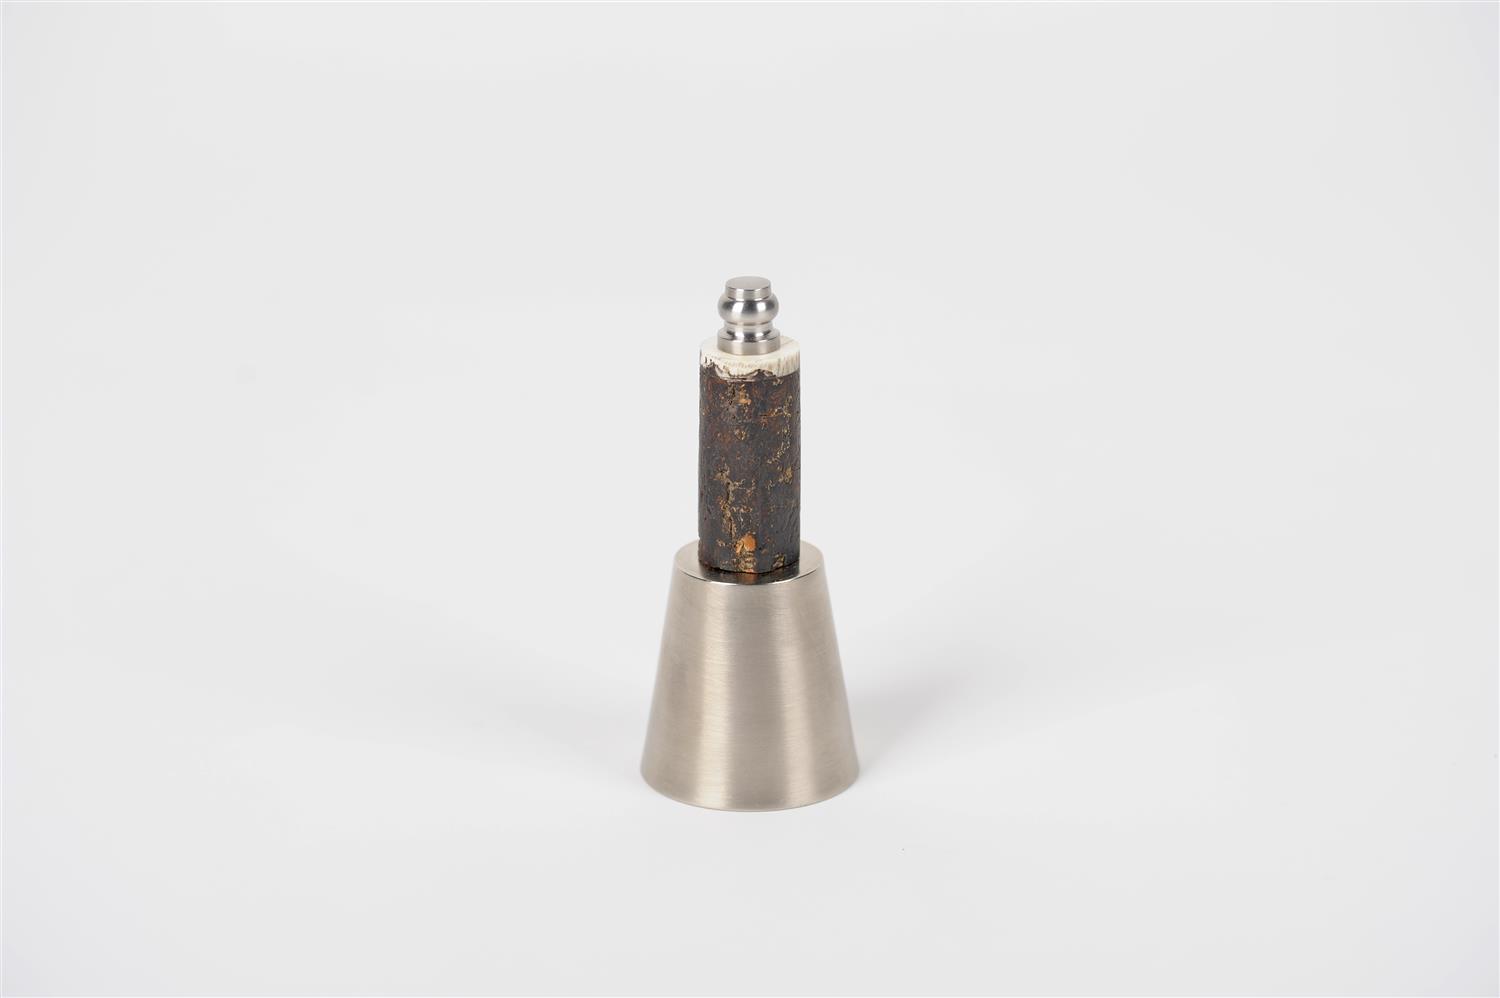 Kerzenlöscher, Griff aus Rindenholz L10cm, holz